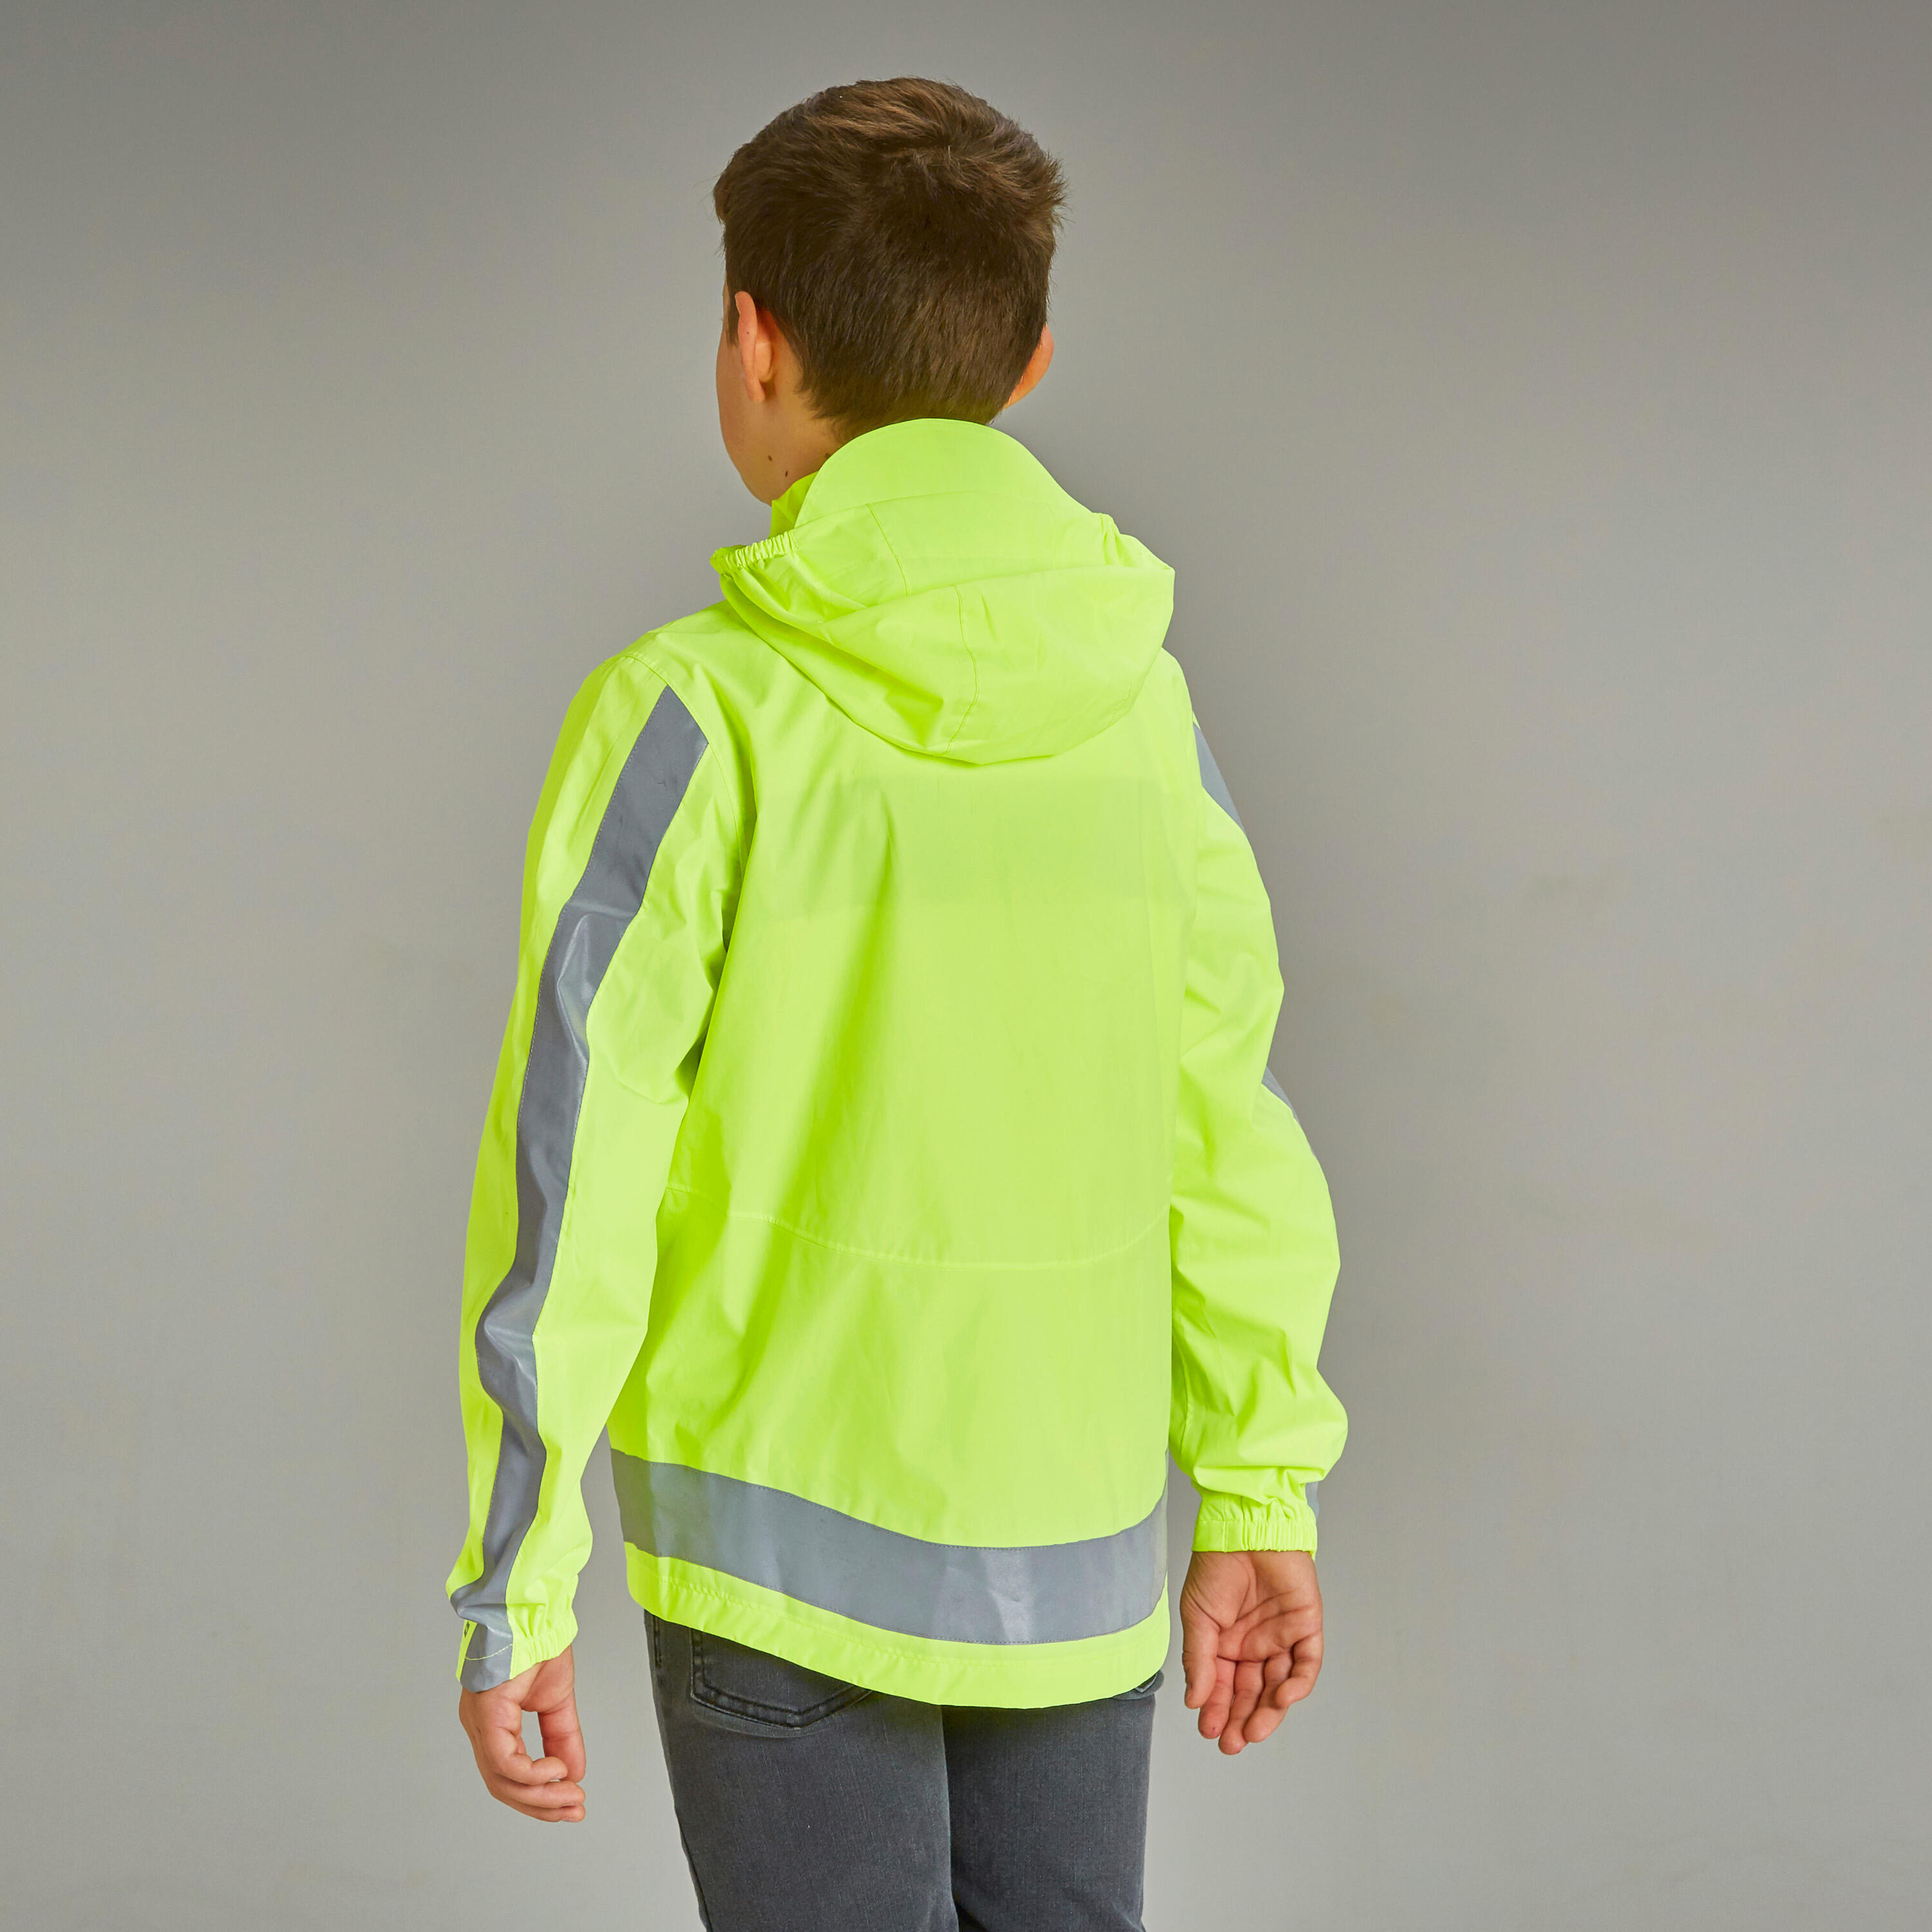 500 Kids' Waterproof Hi-Vis Cycling Jacket - Yellow 5/11